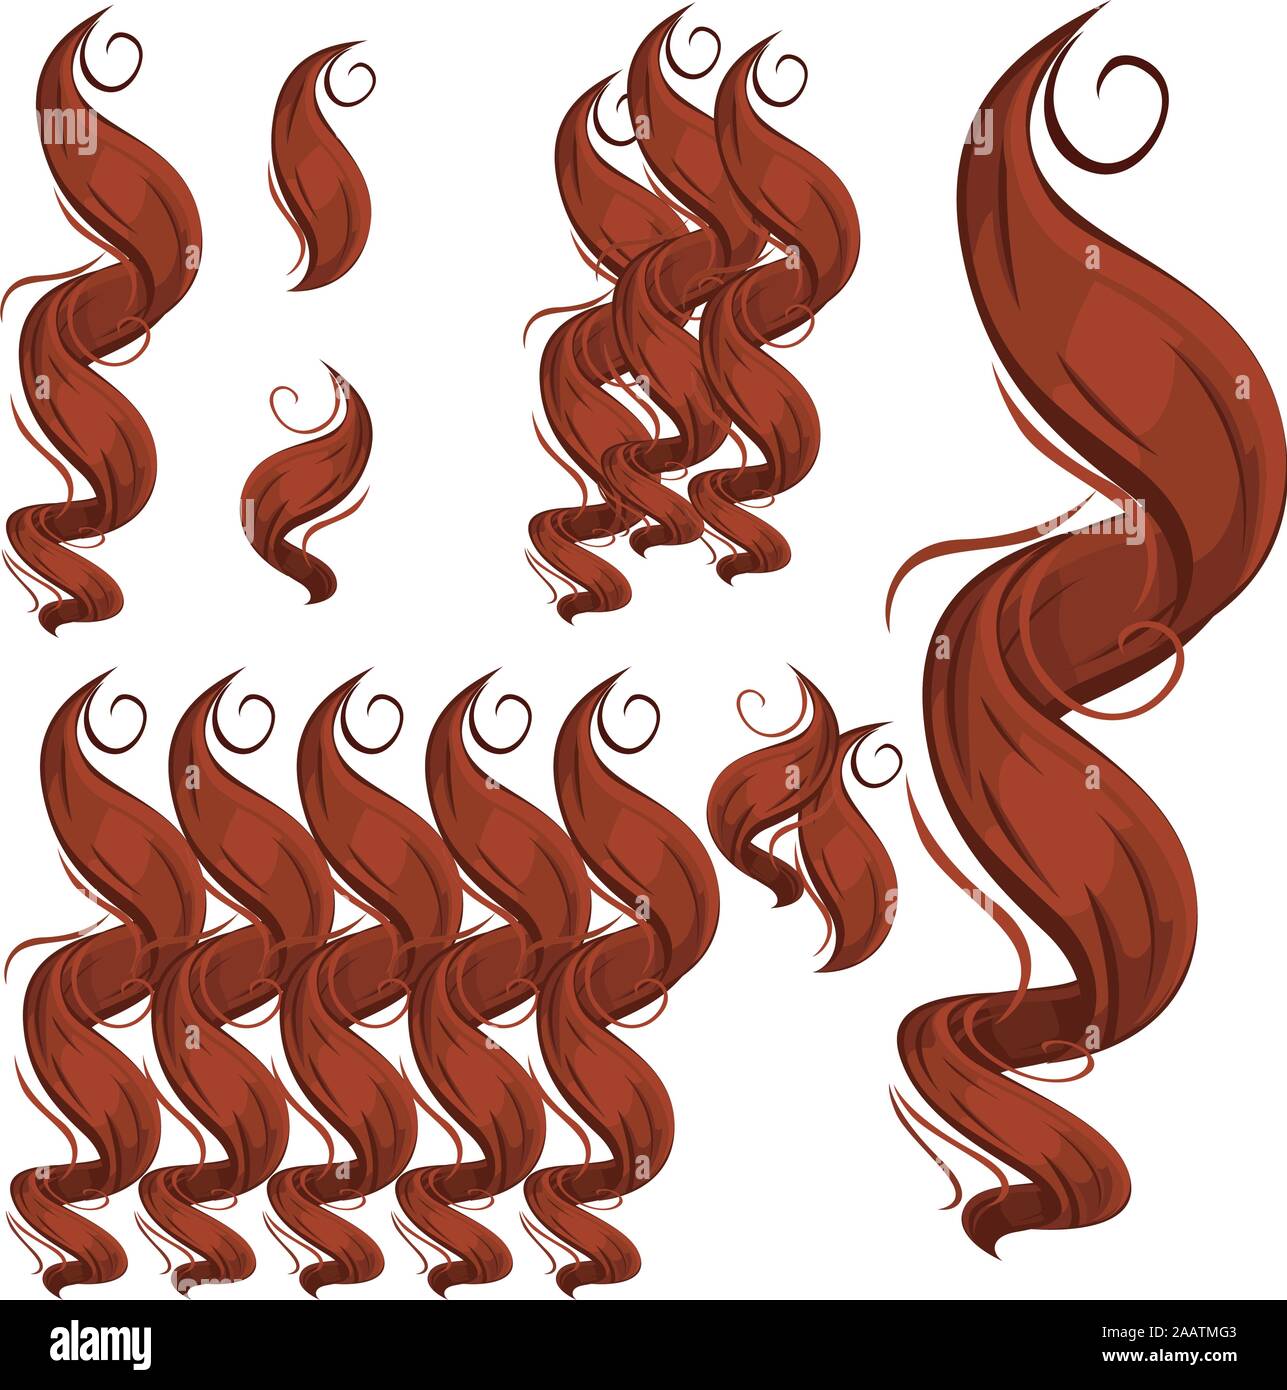 Verriegelungen des Haares. Eine Reihe einzelner Elemente und Kompositionen. Vector Illustration isoliert auf einem weißen Hintergrund. Haarfarbe Rot Stock Vektor